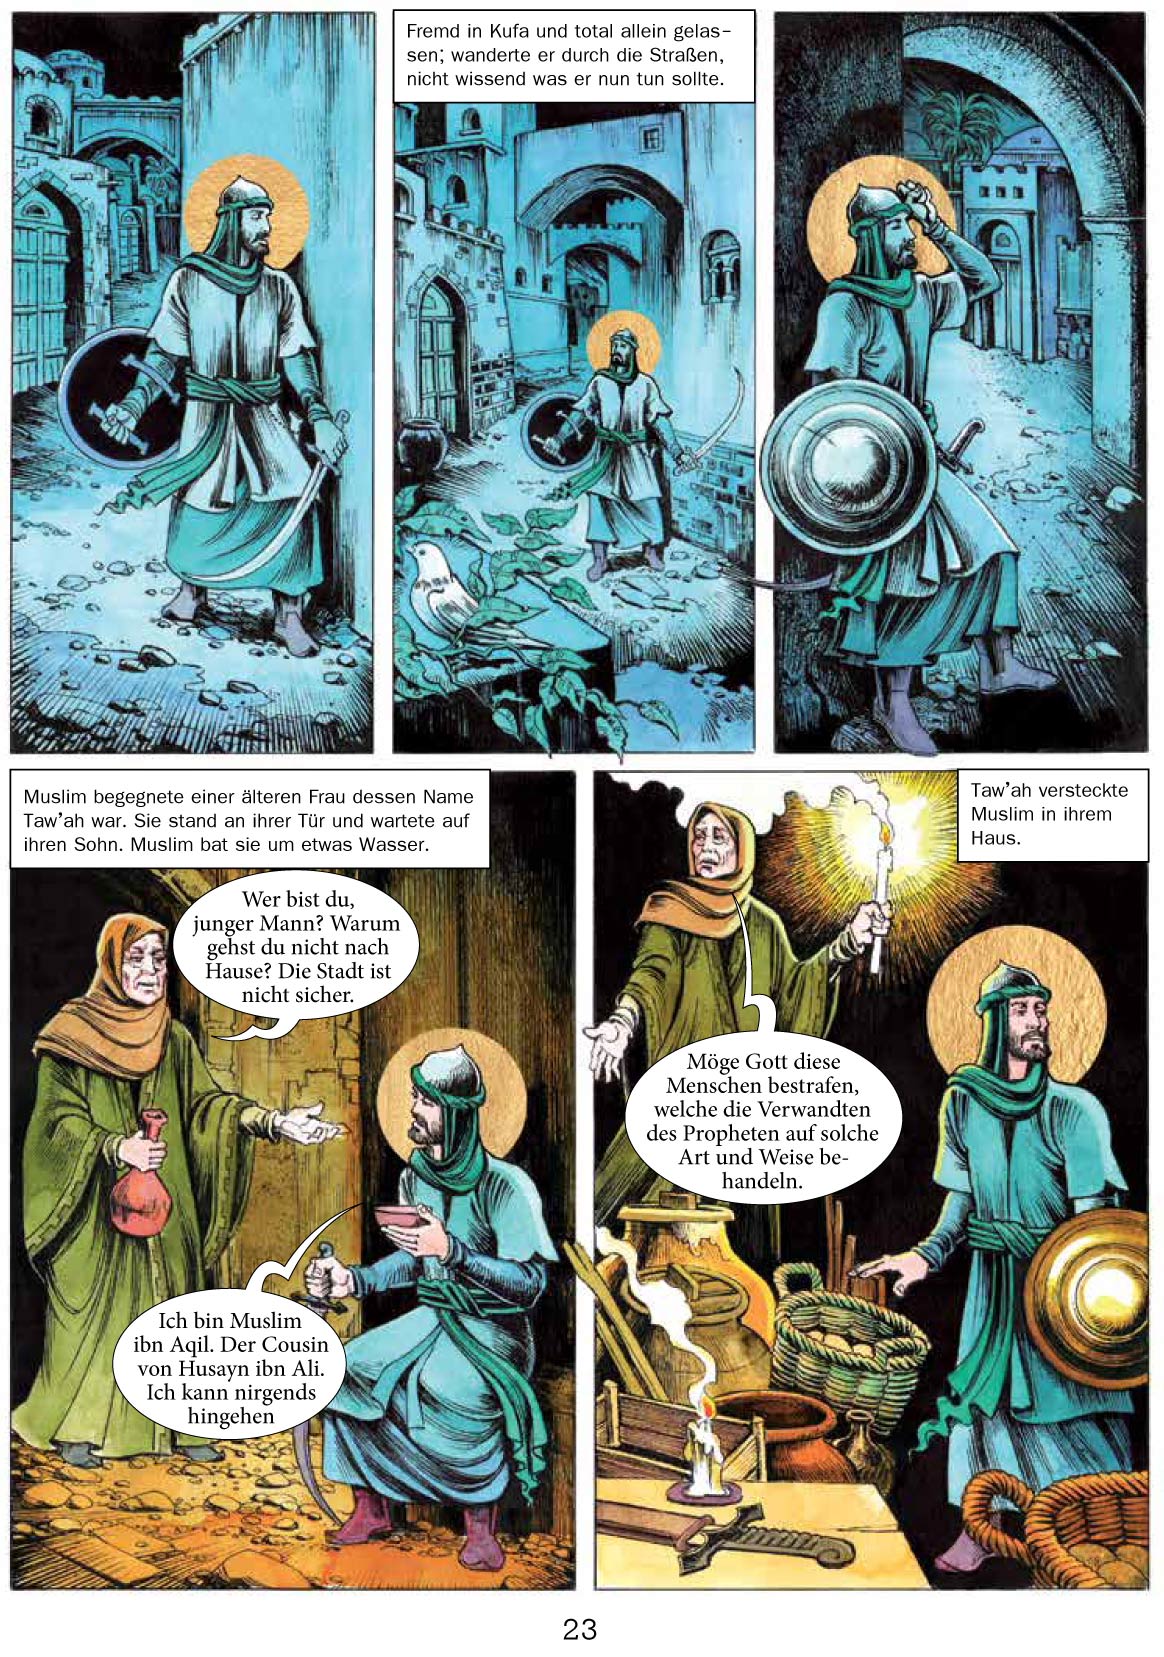 Die Geschichte Von Ashura Imam Hussein Als Comic Fur Kinder Und Jugendliche Schia Shop De Der Online Shop Fur Schiiten